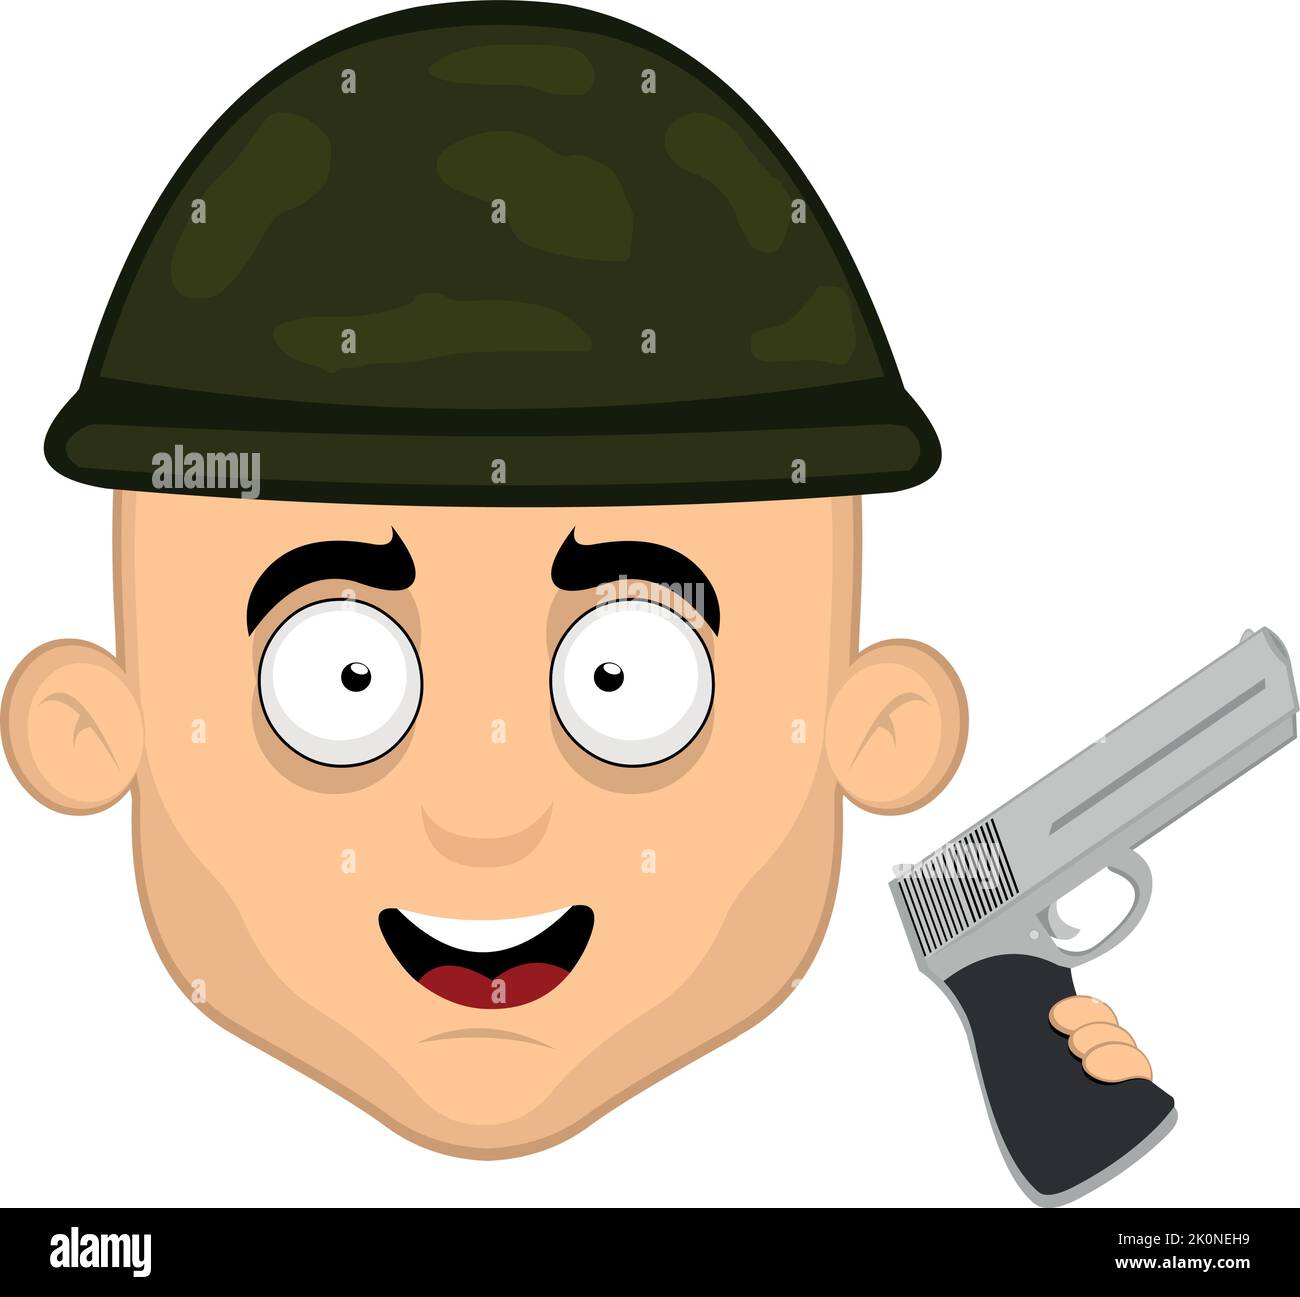 Illustration vectorielle du visage d'un soldat de guerre de dessin animé avec un casque de camouflage et une arme à feu dans sa main Illustration de Vecteur